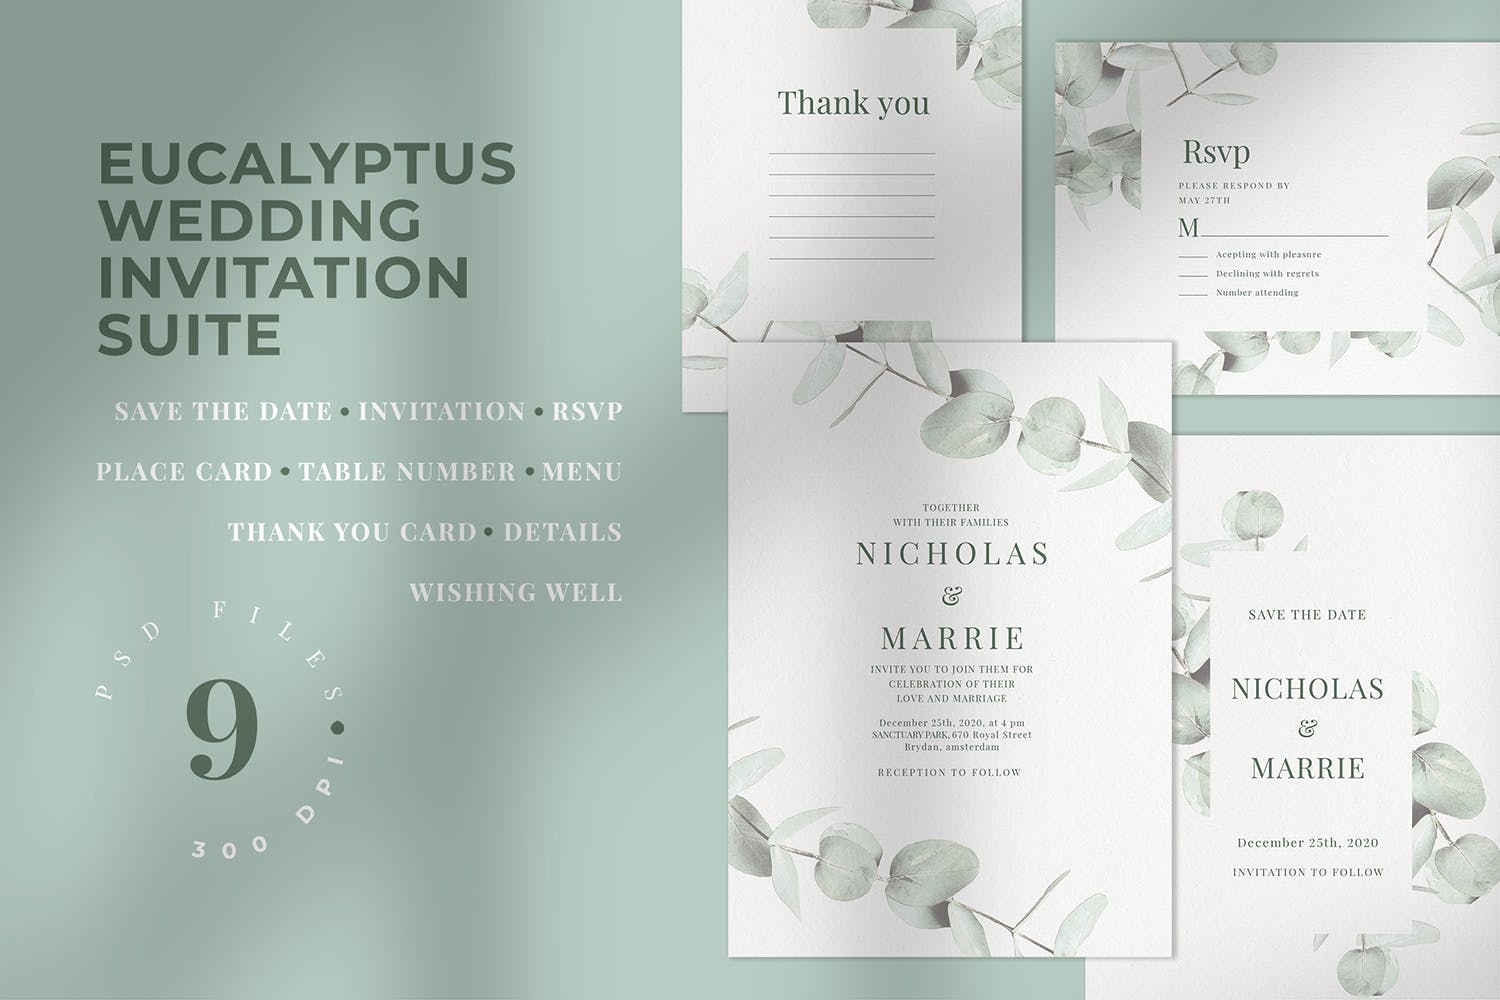 桉树装饰元素婚礼邀请设计素材包 Eucalyptus Wedding Invitation Suite插图1